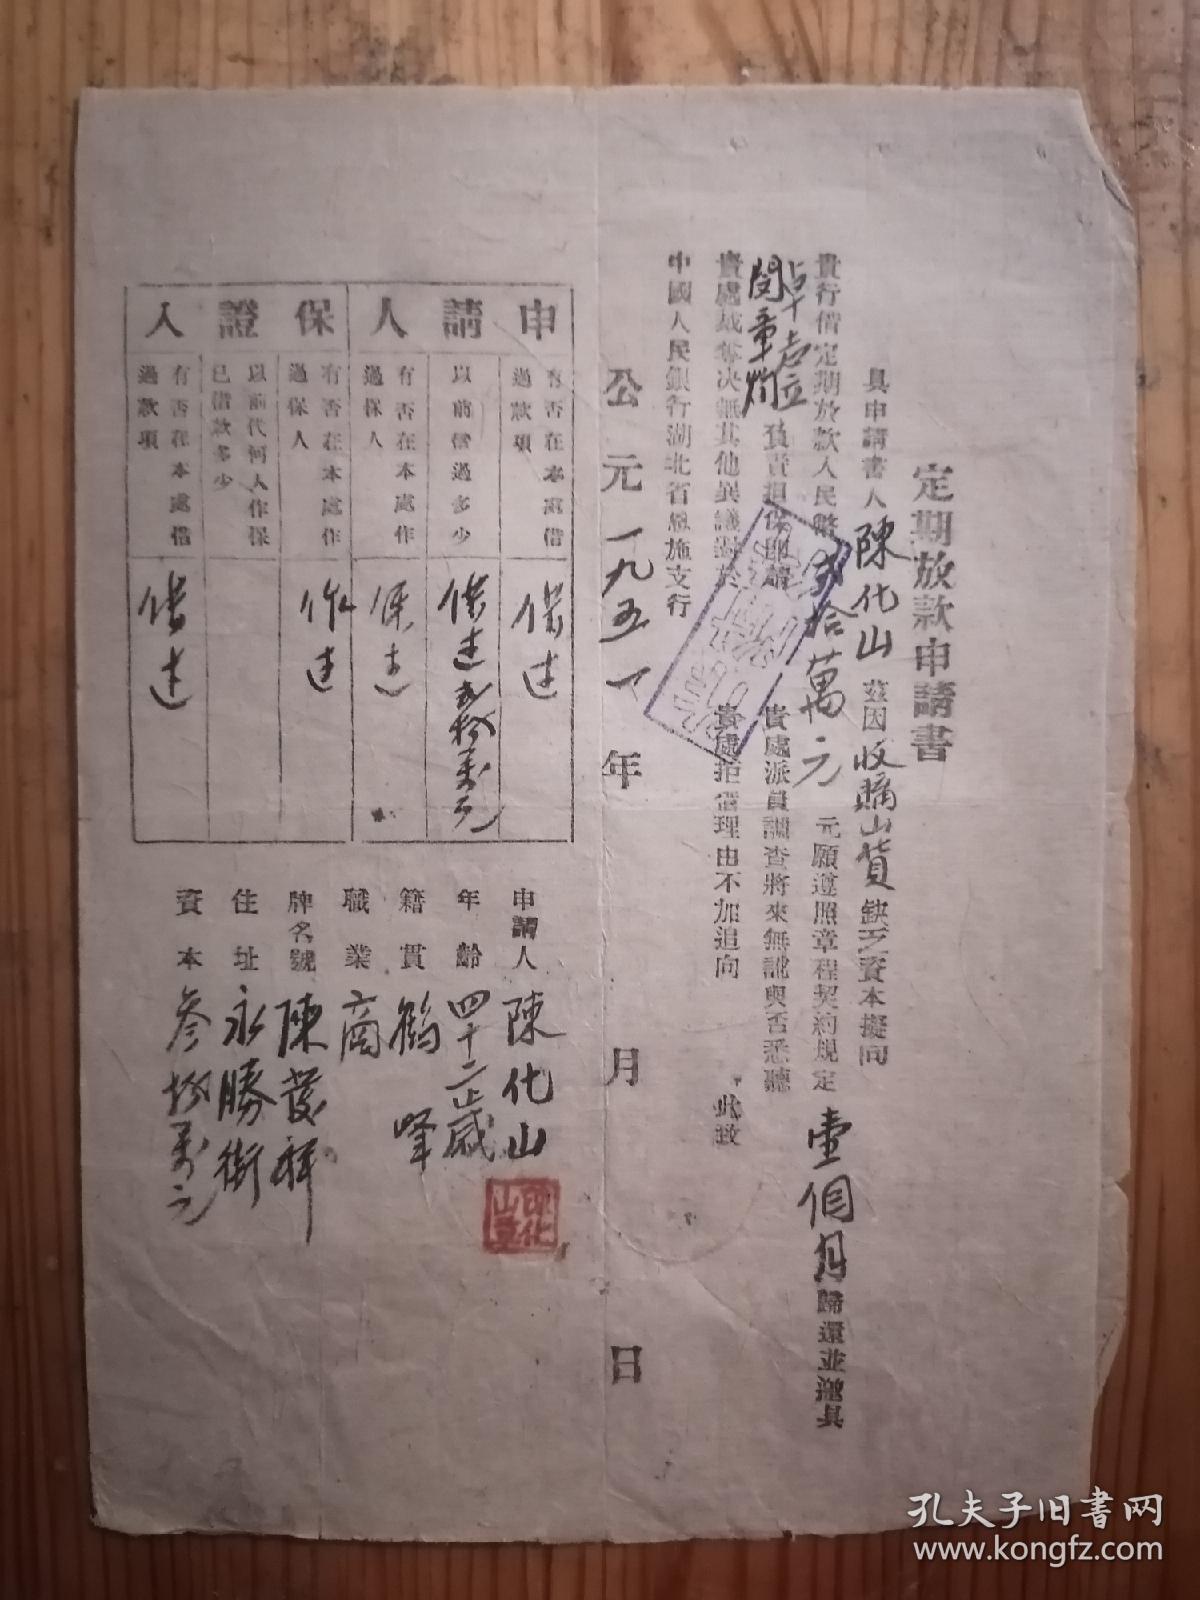 1951年中国人民银行恩施支行定期放款申请书